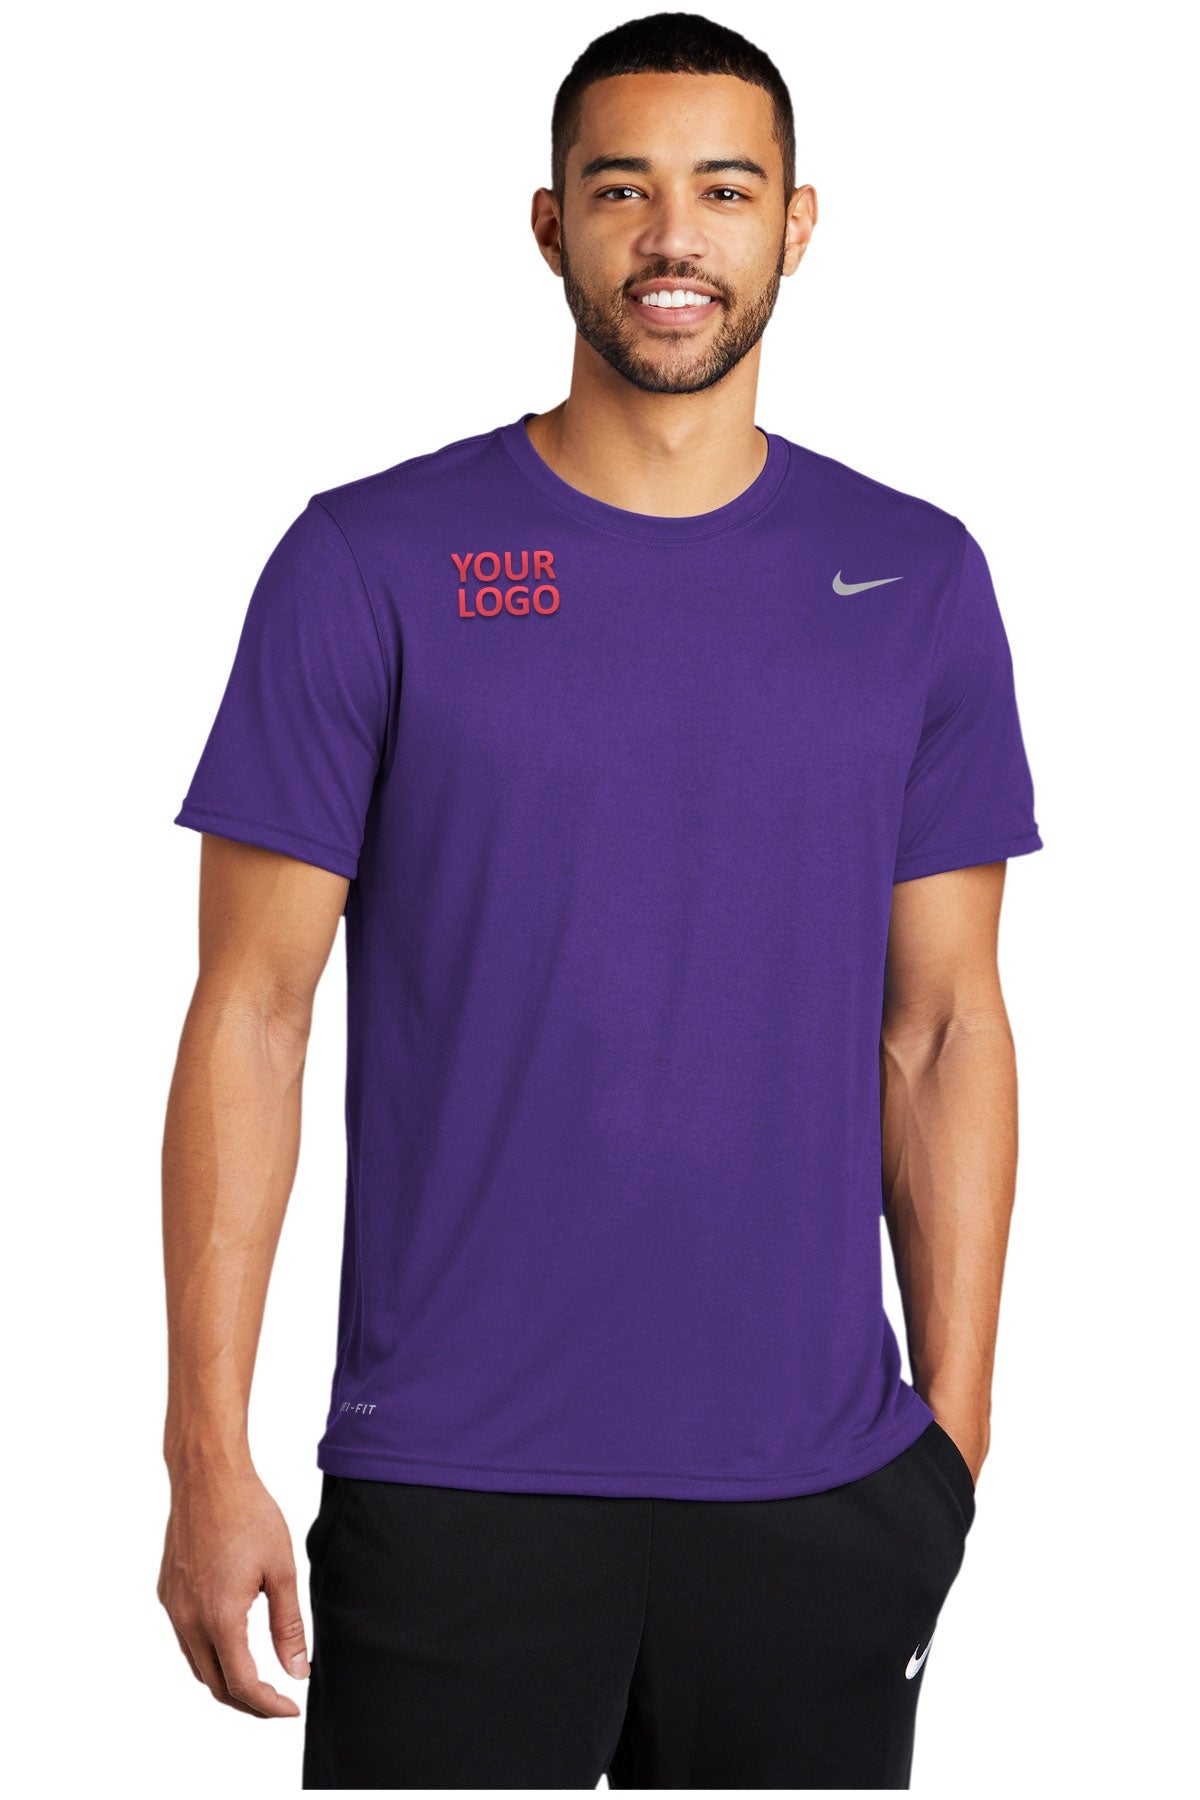 Nike Team rLegend Customized Tee's, Court Purple